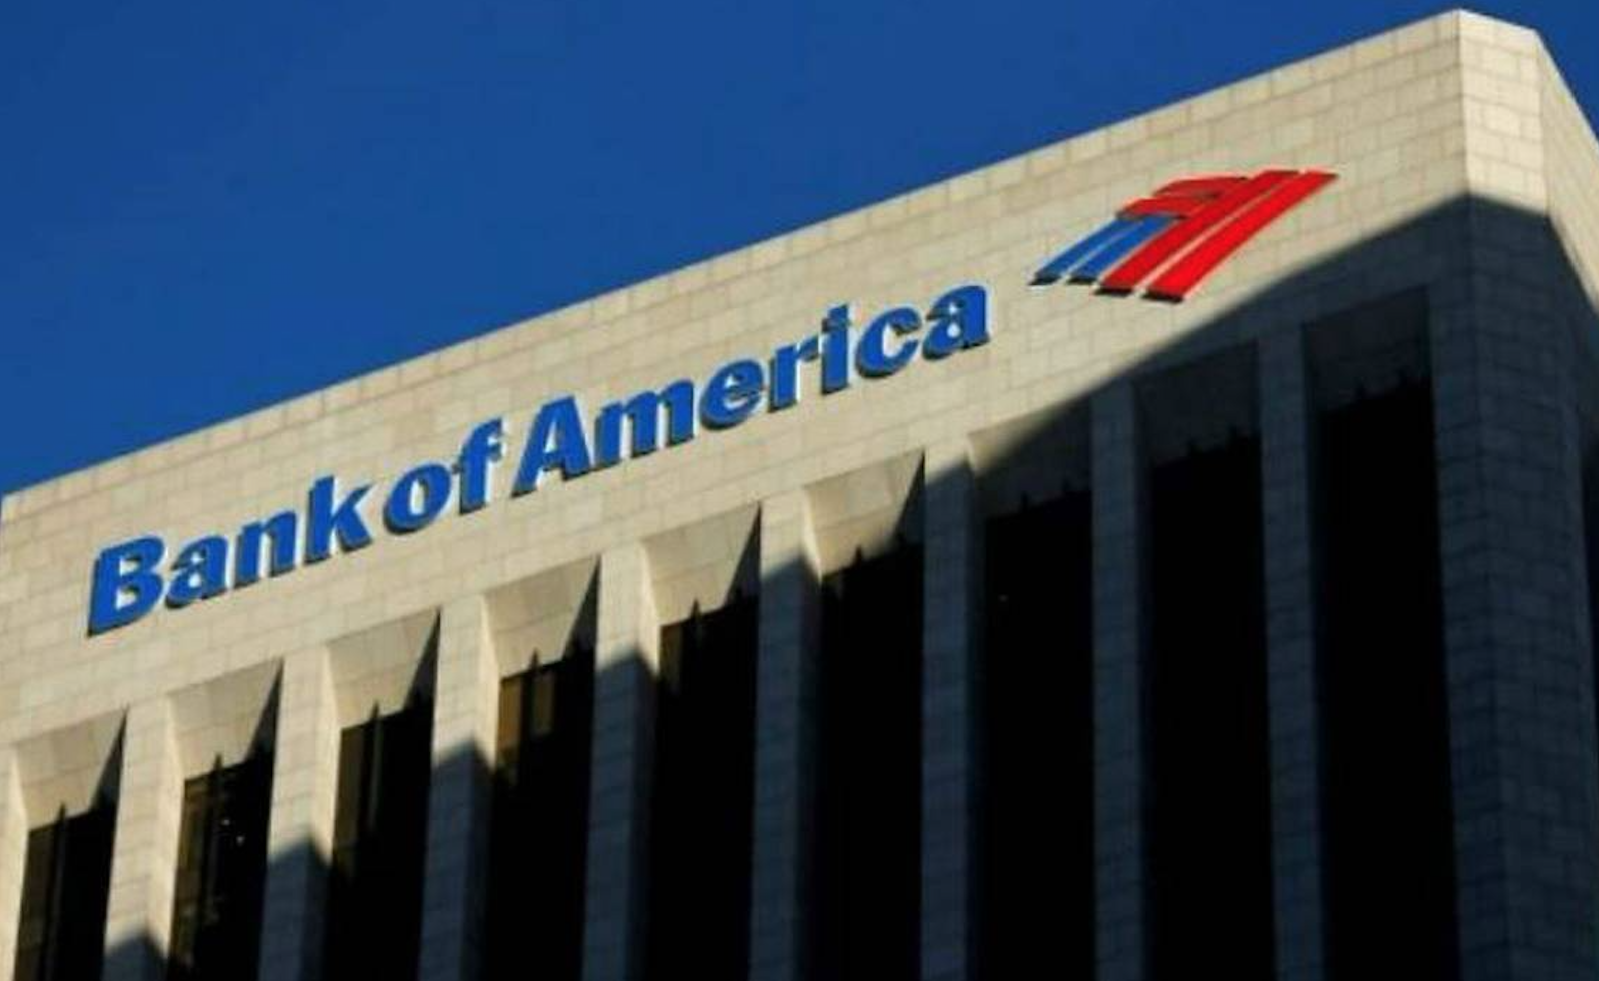 Bank of America pagará multa de 250 mdd por comisiones duplicadas y cuentas falsas